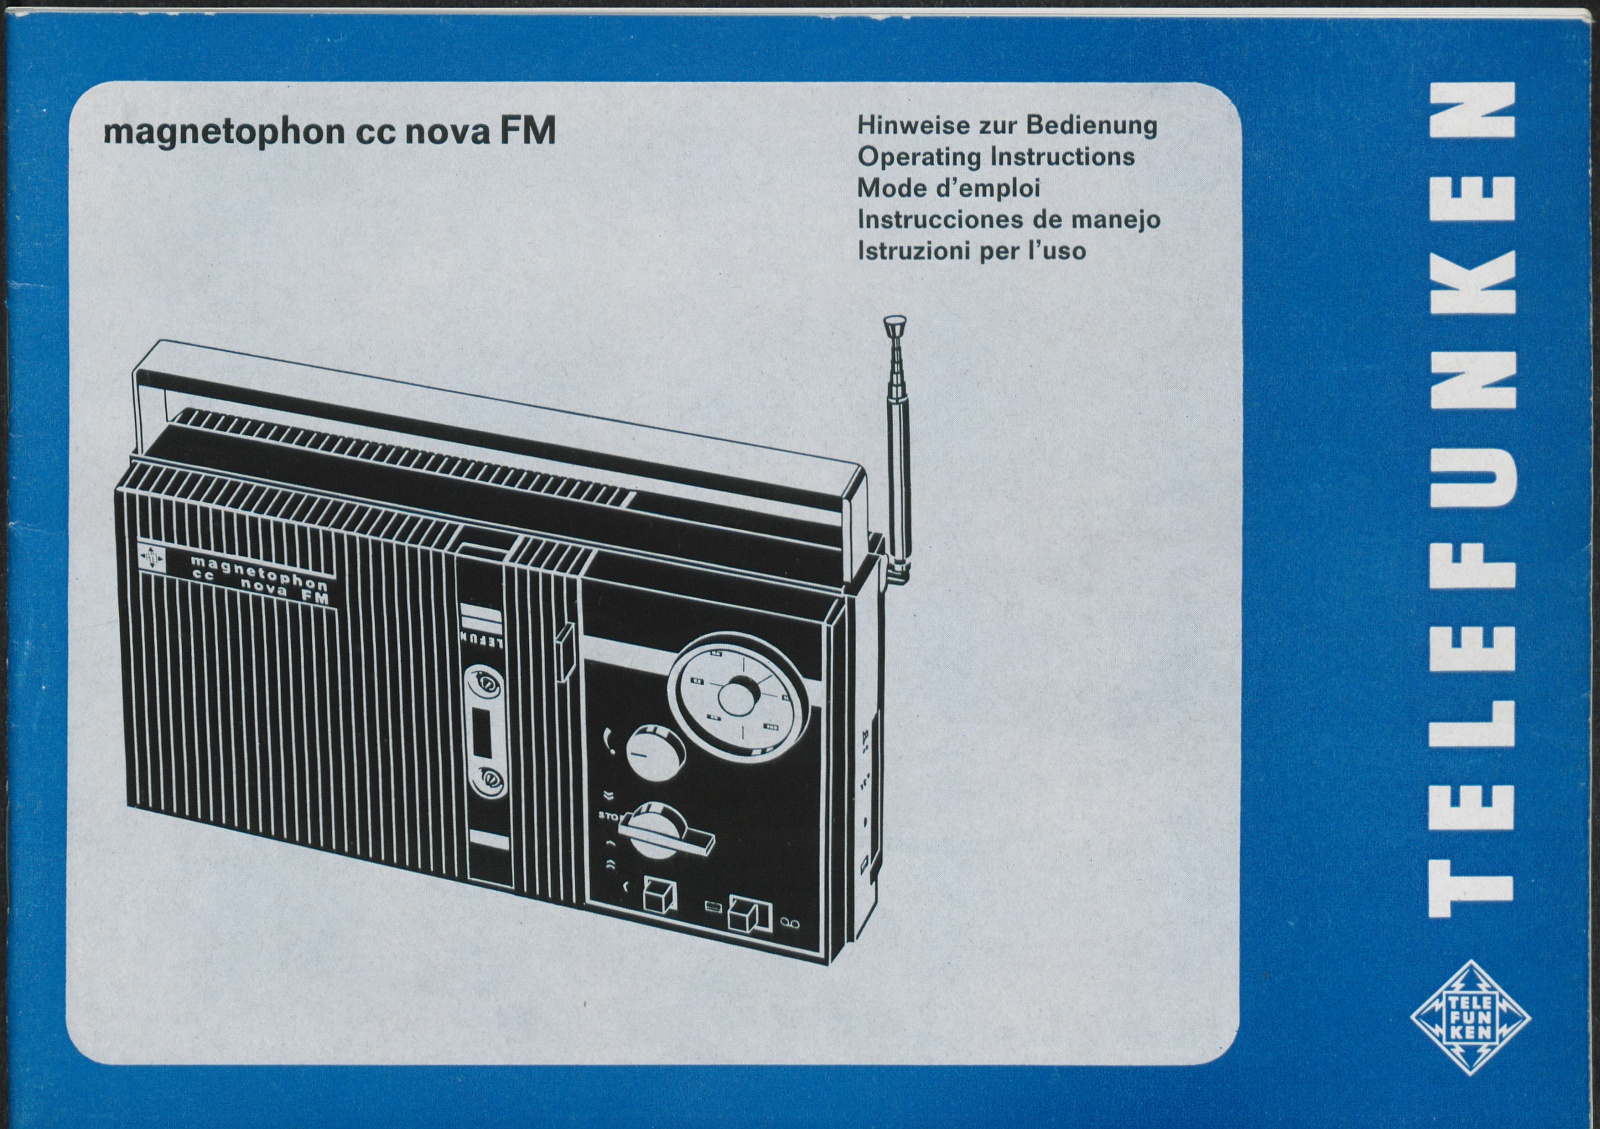 Bedienungsanleitung: Hinweise zur Bedienung Telefunken magnetophon cc nova FM (Stiftung Deutsches Technikmuseum Berlin CC0)